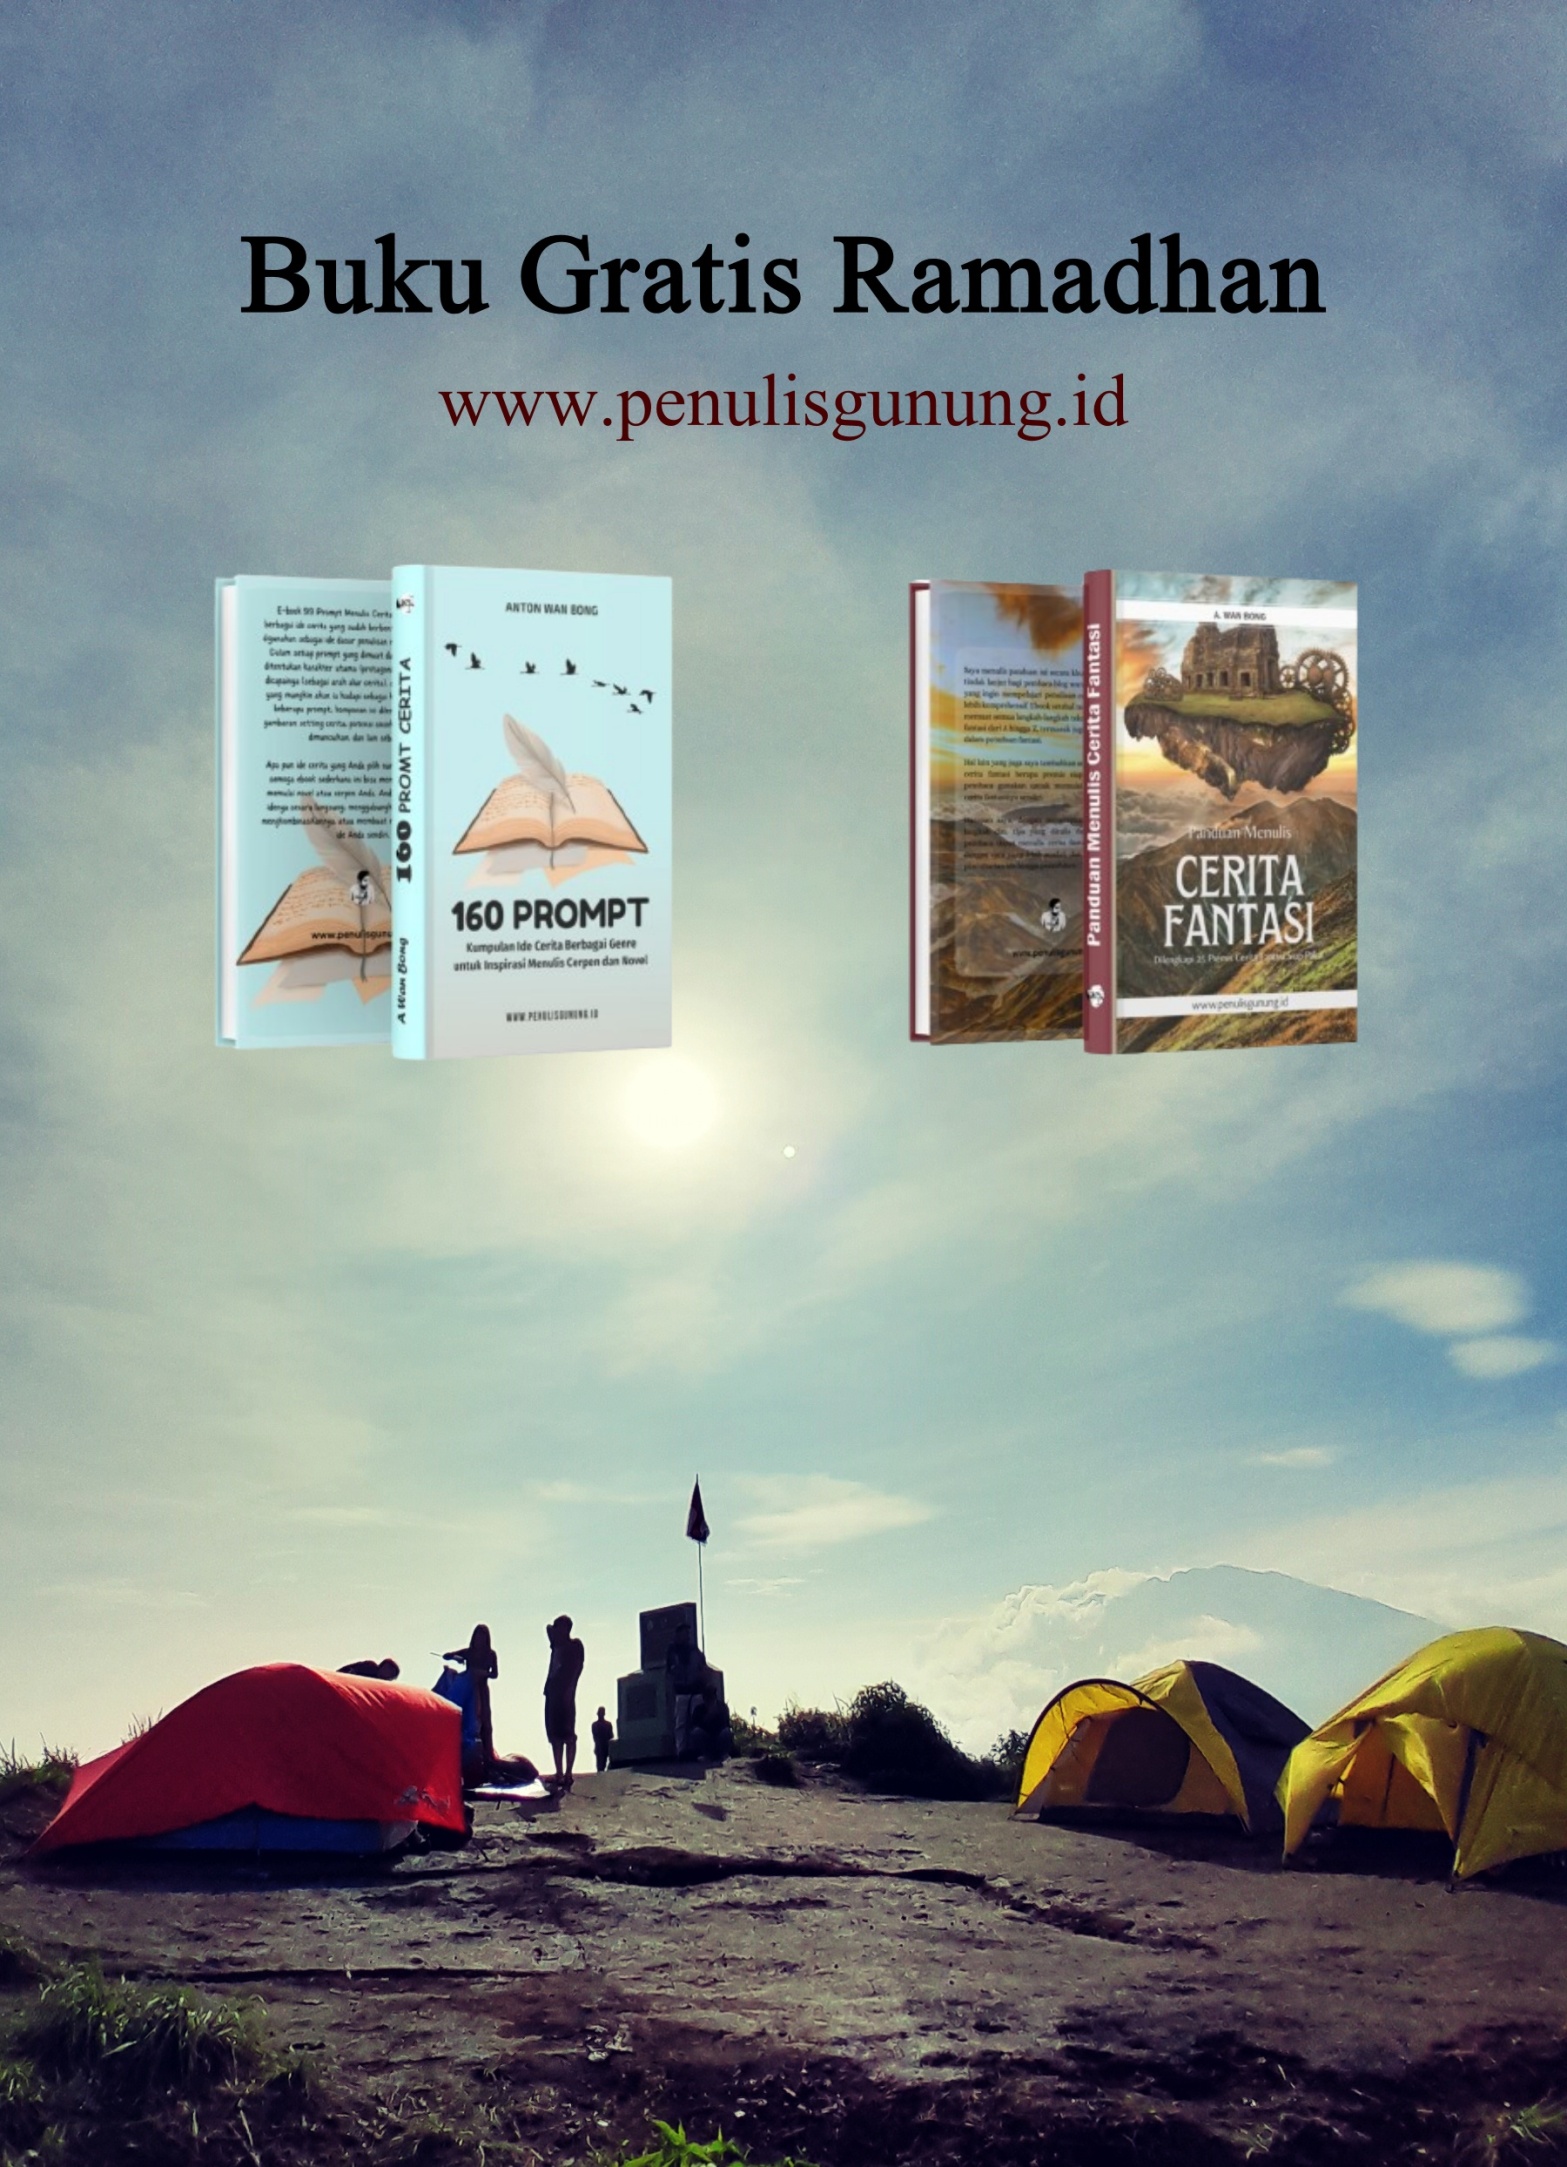 Penulis Gunung Berbagi Ebook Gratis Ramadhan 1445